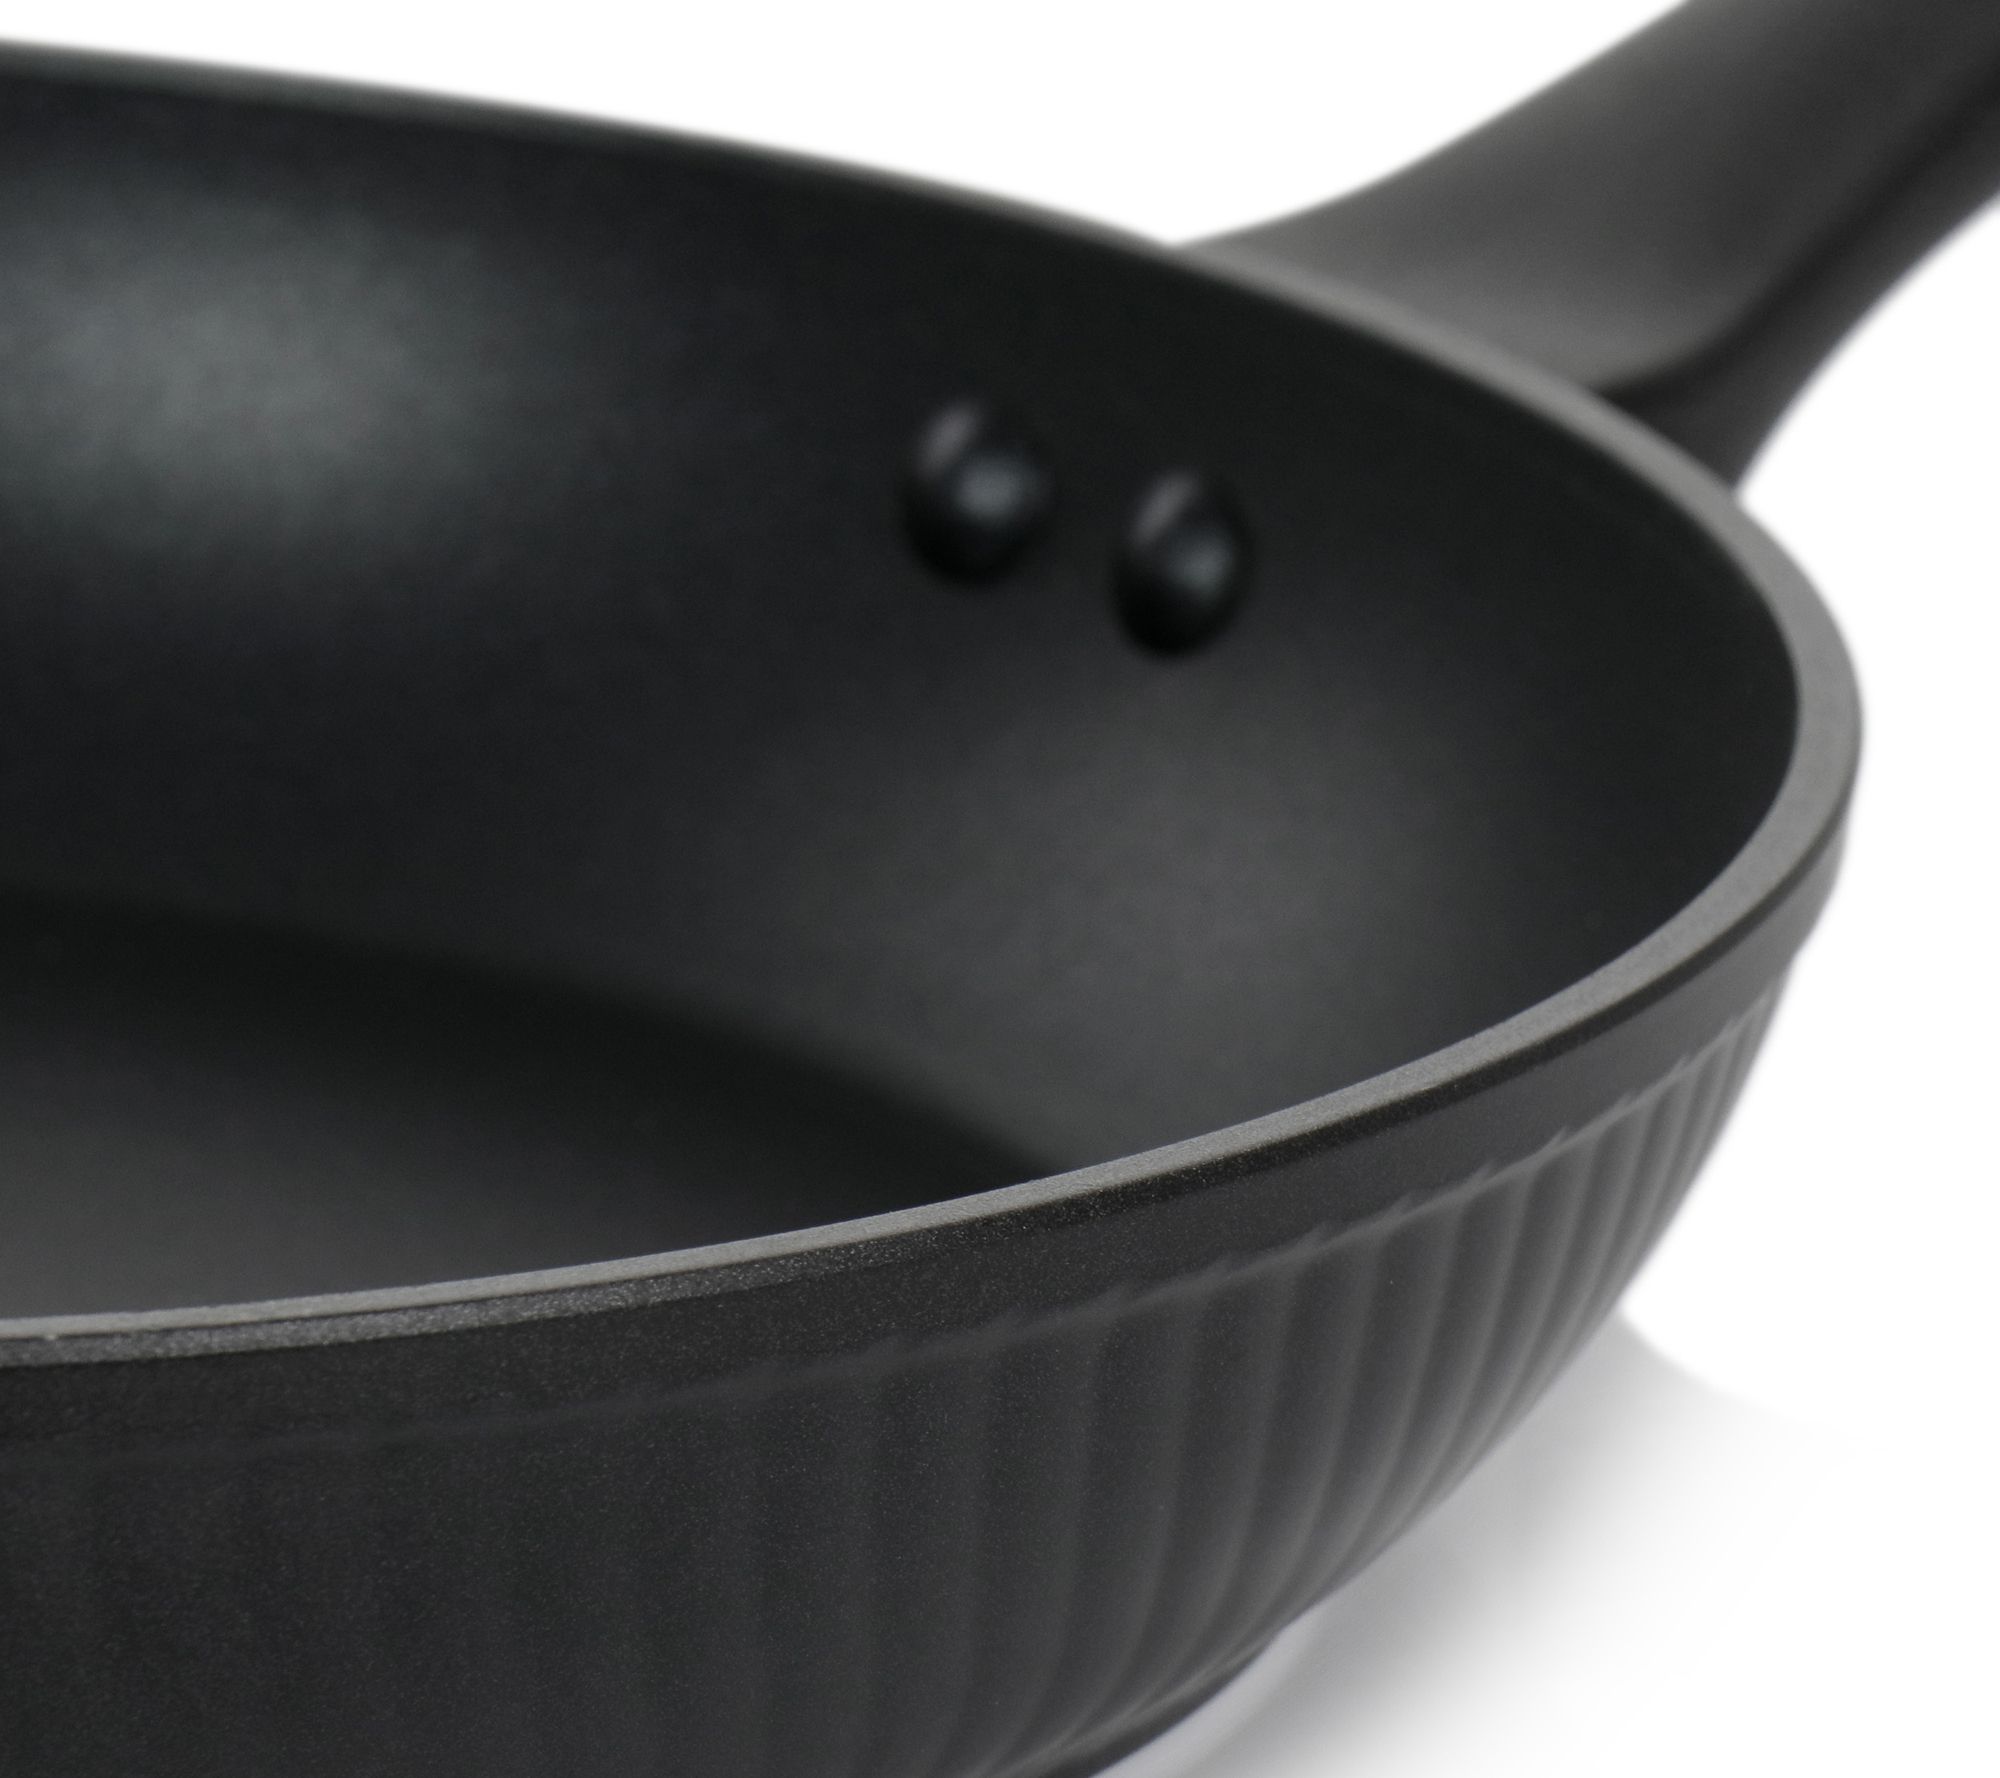 Oster Kingsway 12 inch Aluminum Nonstick Frying Pan in Black